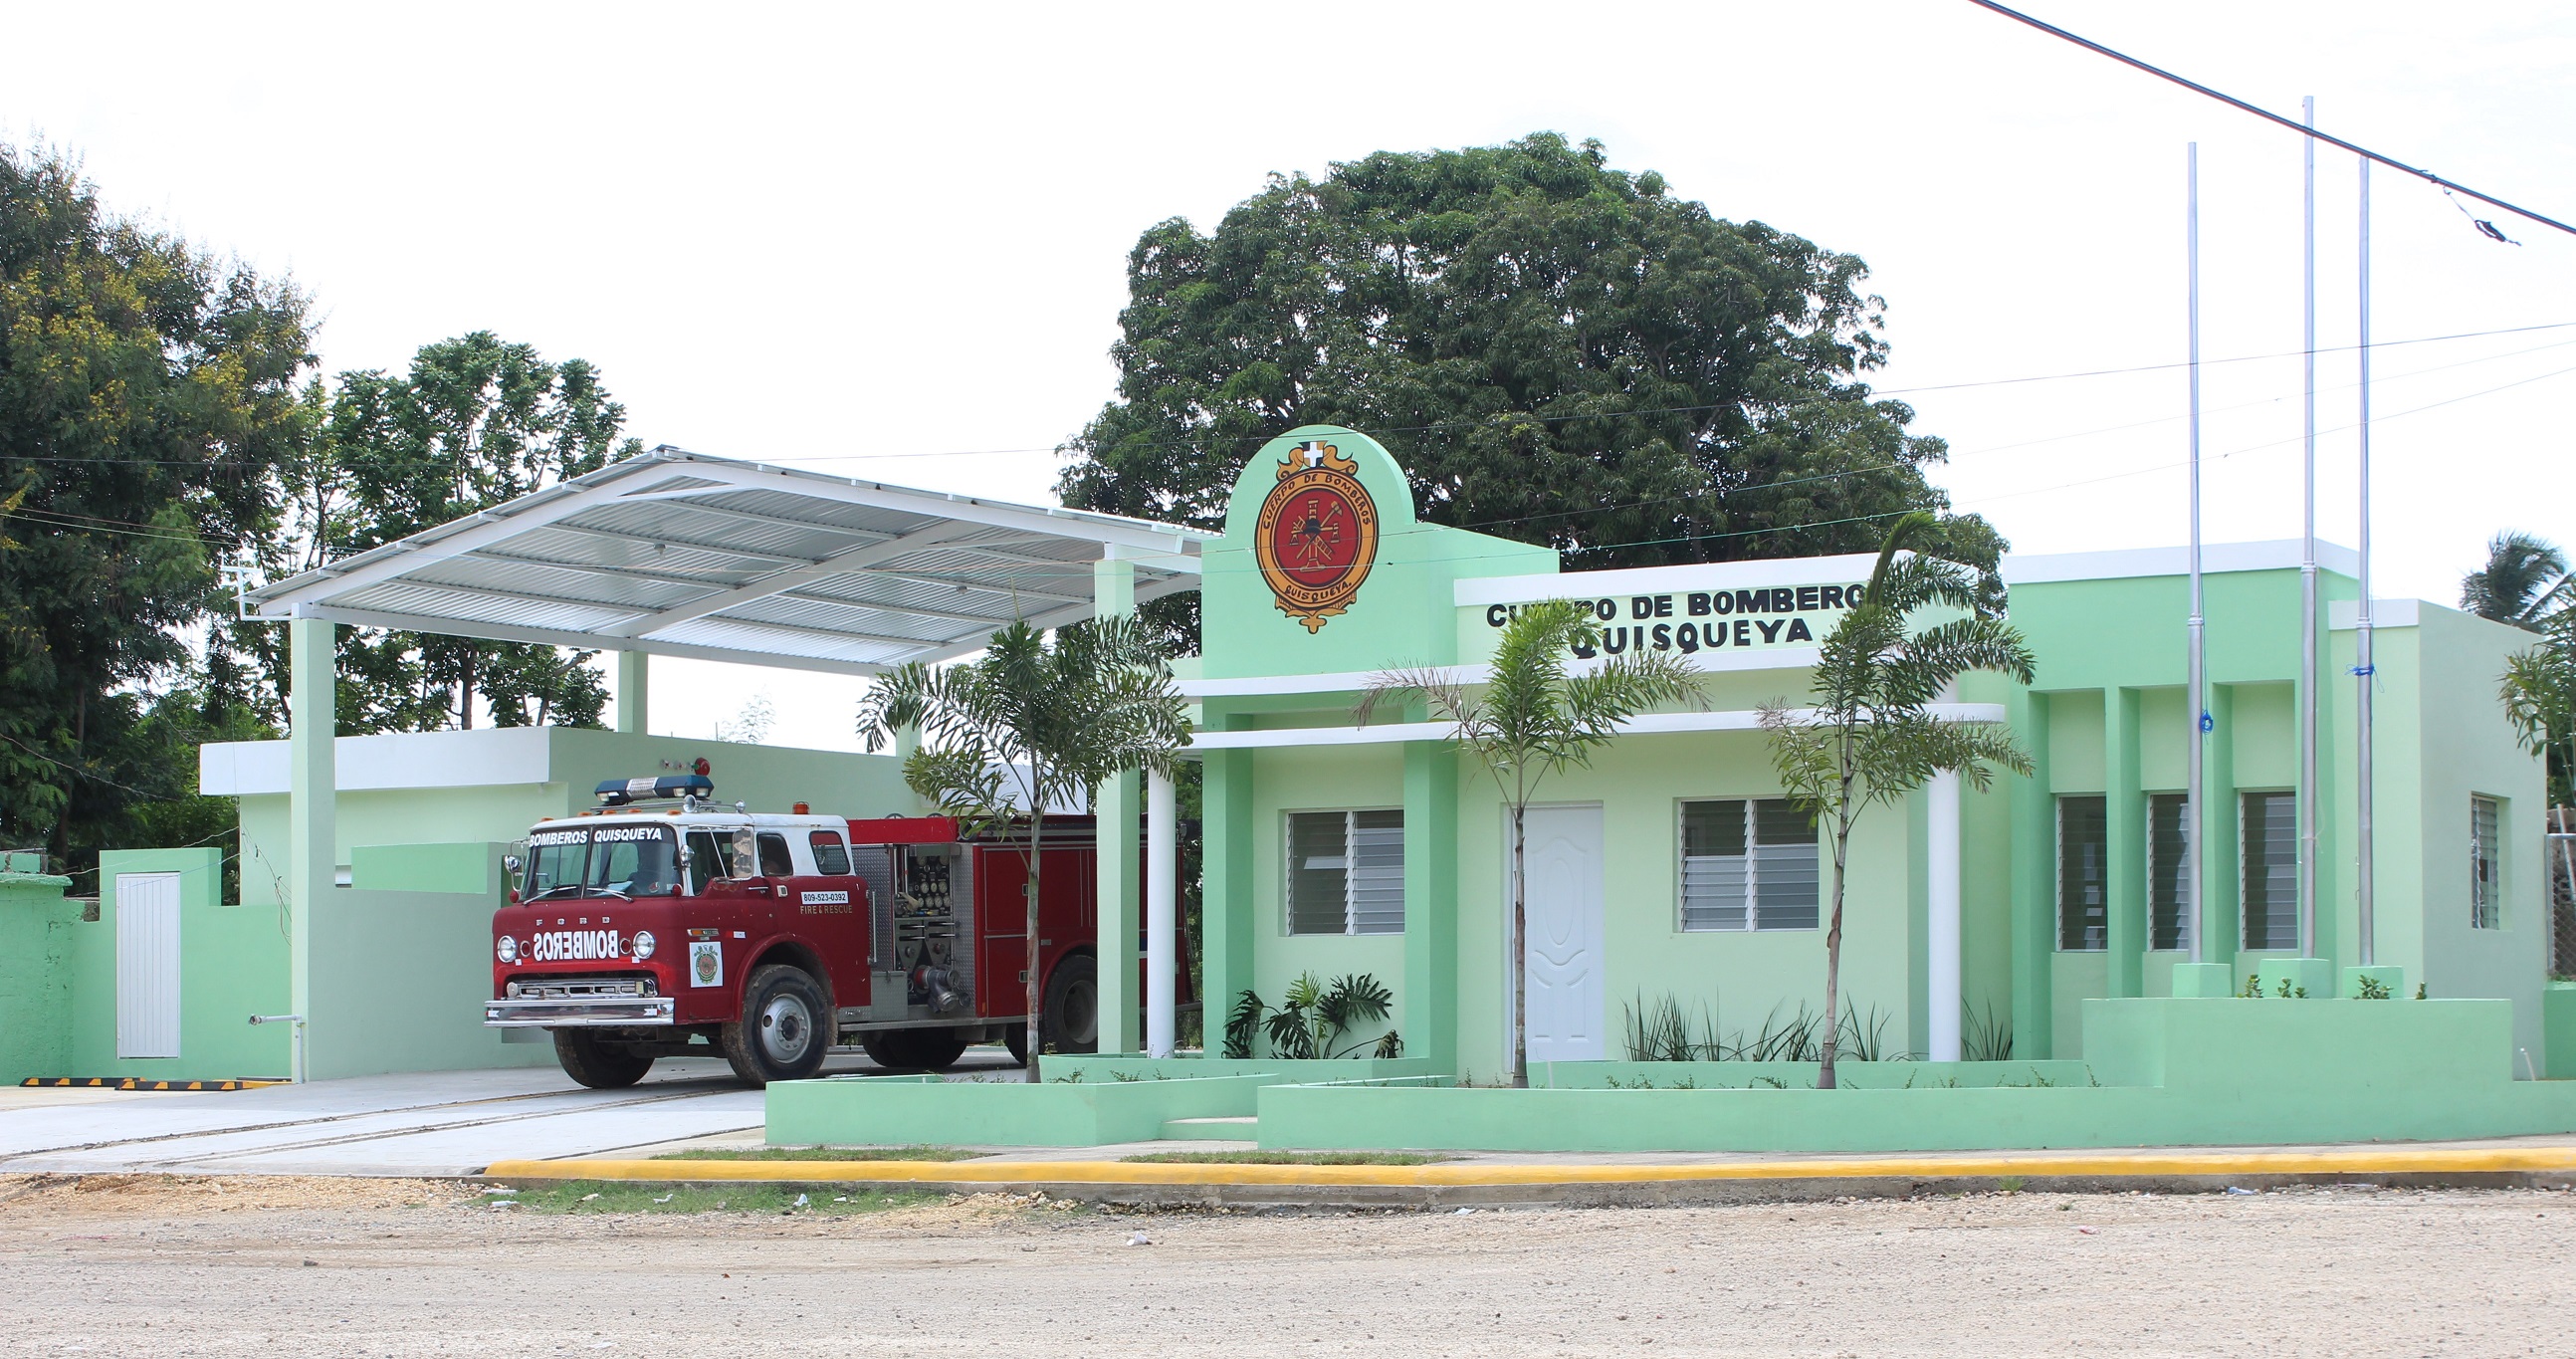 EGE Haina dona estación de bomberos al municipio Quisqueya en San Pedro de Macorís